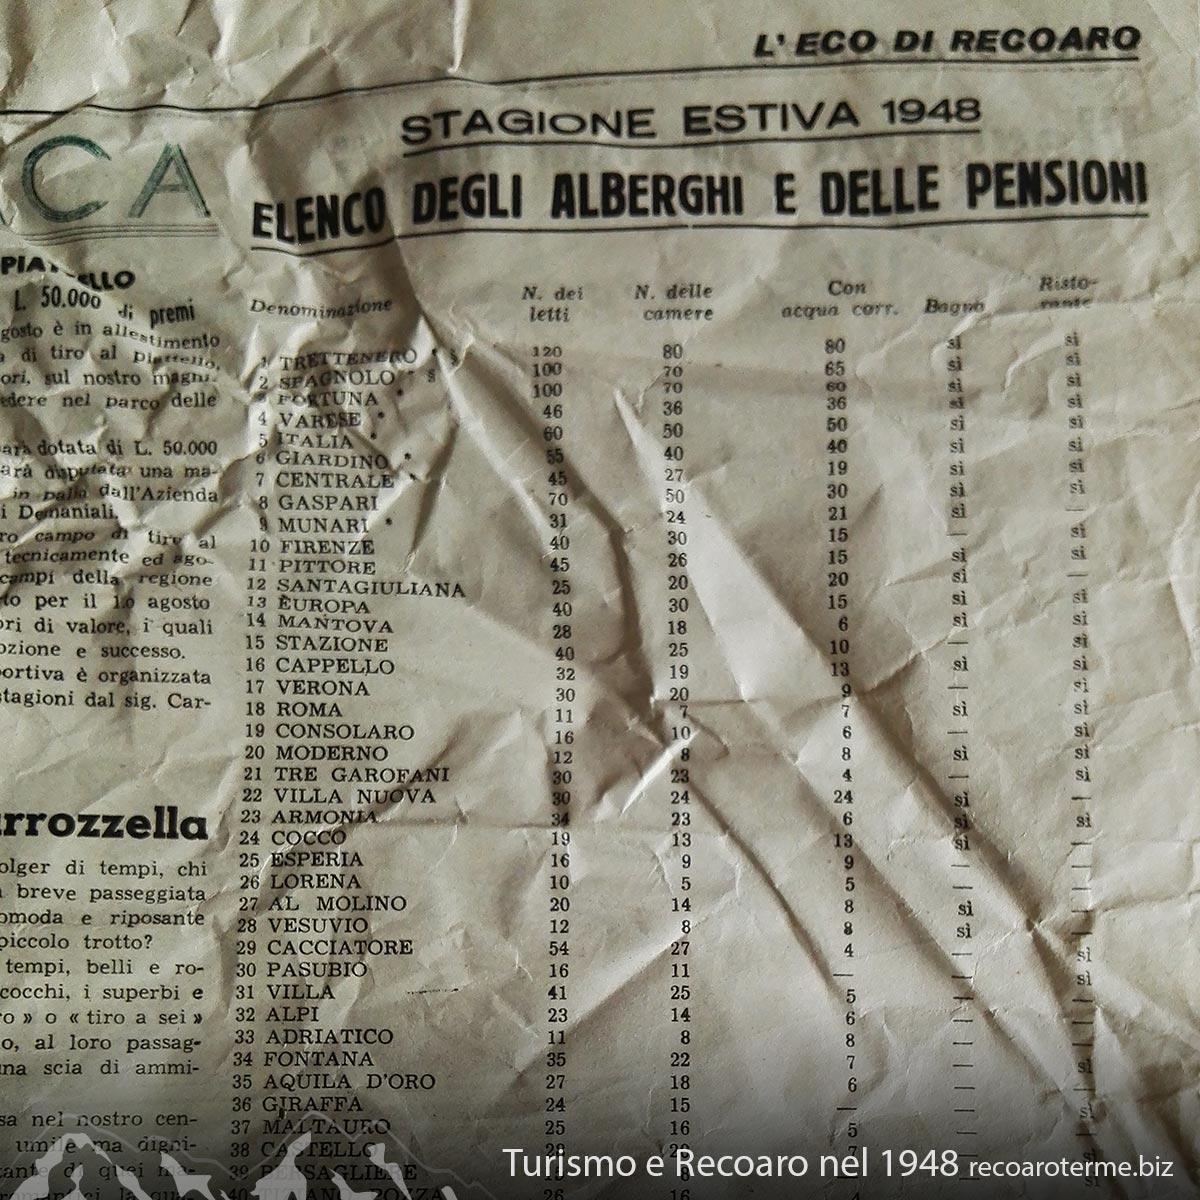 Eco di Recoaro - 1948: Elenco degli Alberghi